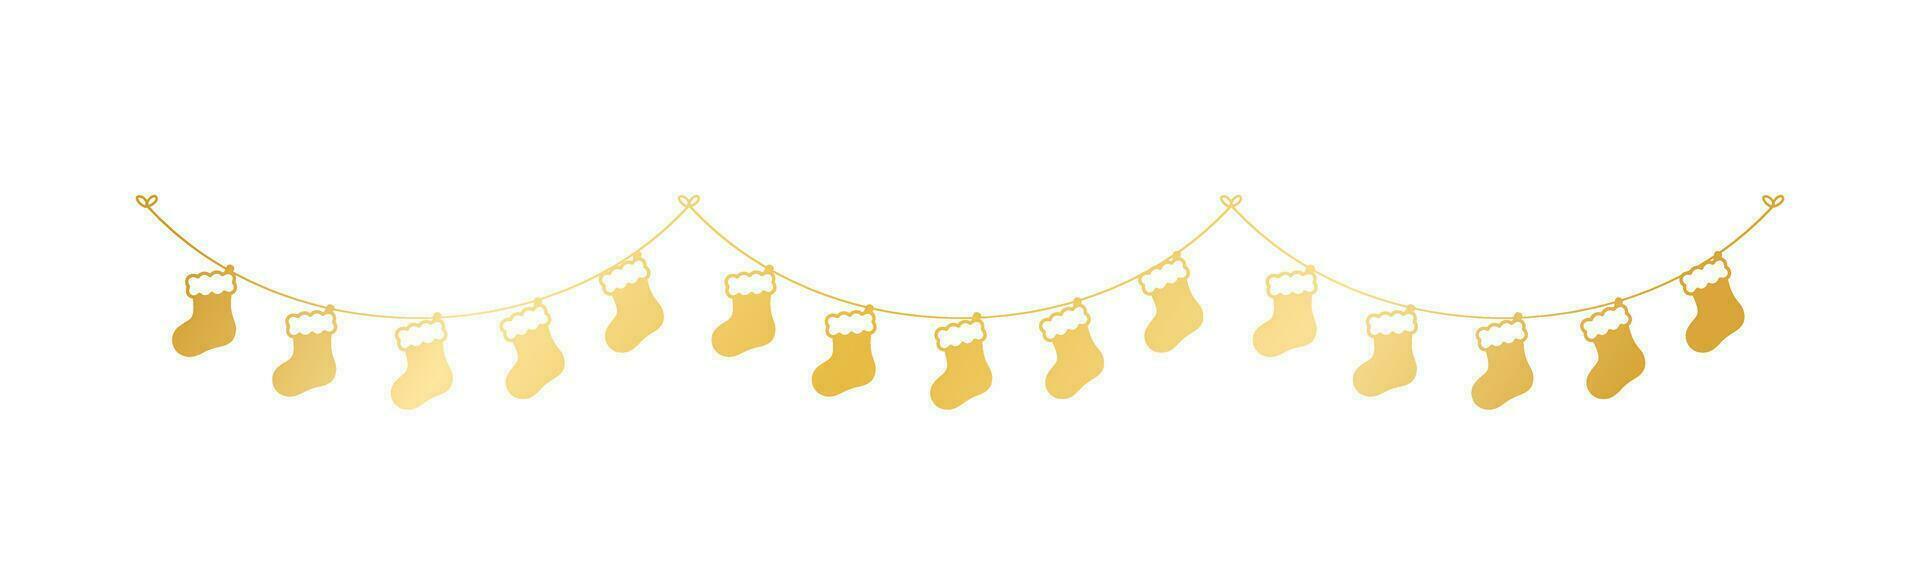 Gold Weihnachten Strumpf Silhouette Girlande Vektor Illustration, Weihnachten Socken Grafik festlich Winter Urlaub Jahreszeit Ammer